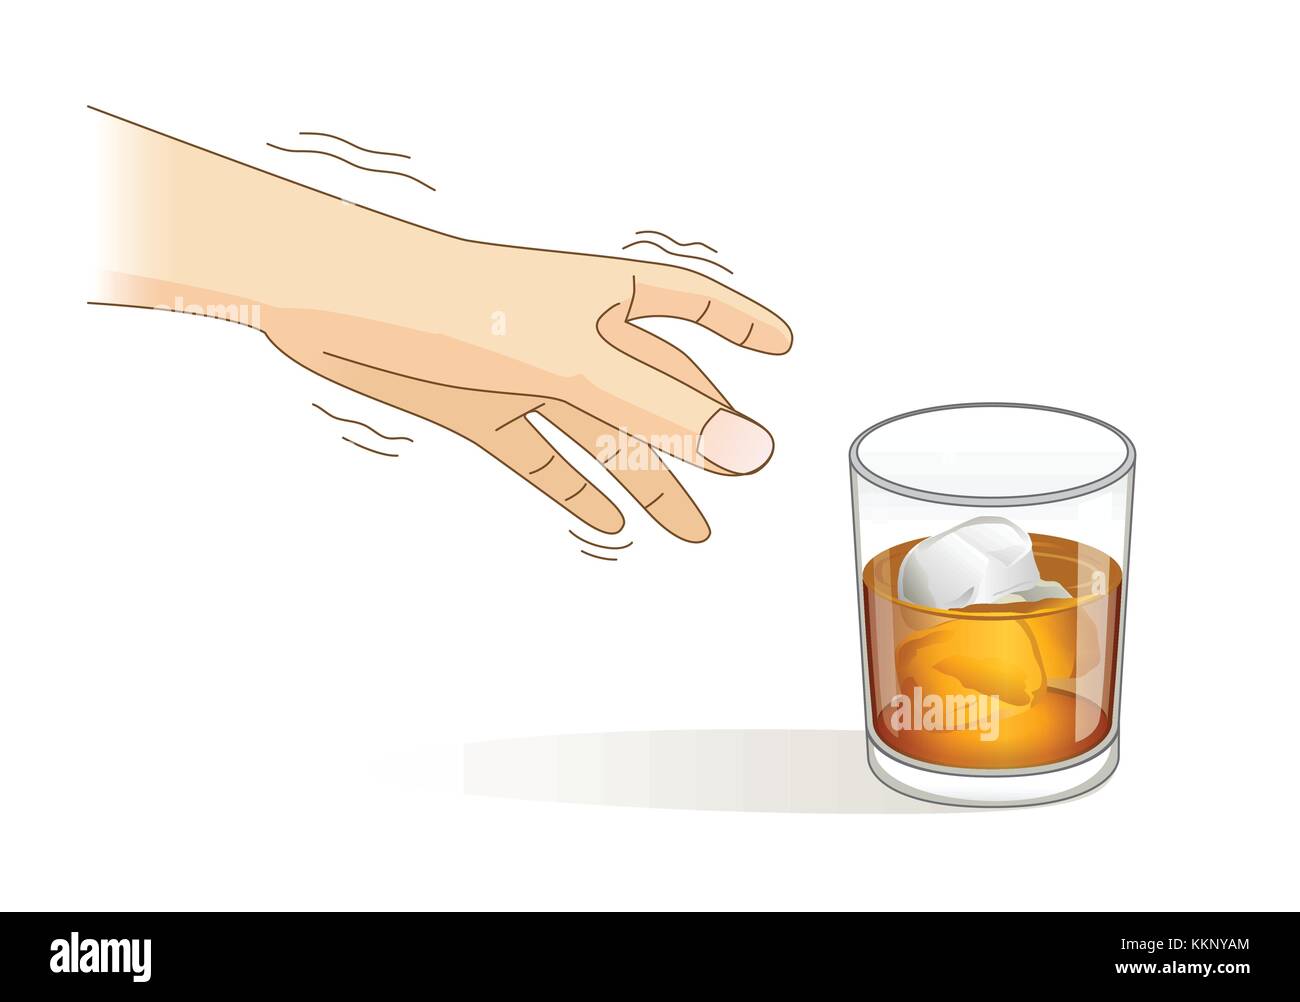 Un symptôme tremblements ont la main tout en tendant un verre de liqueur. Illustration de Vecteur